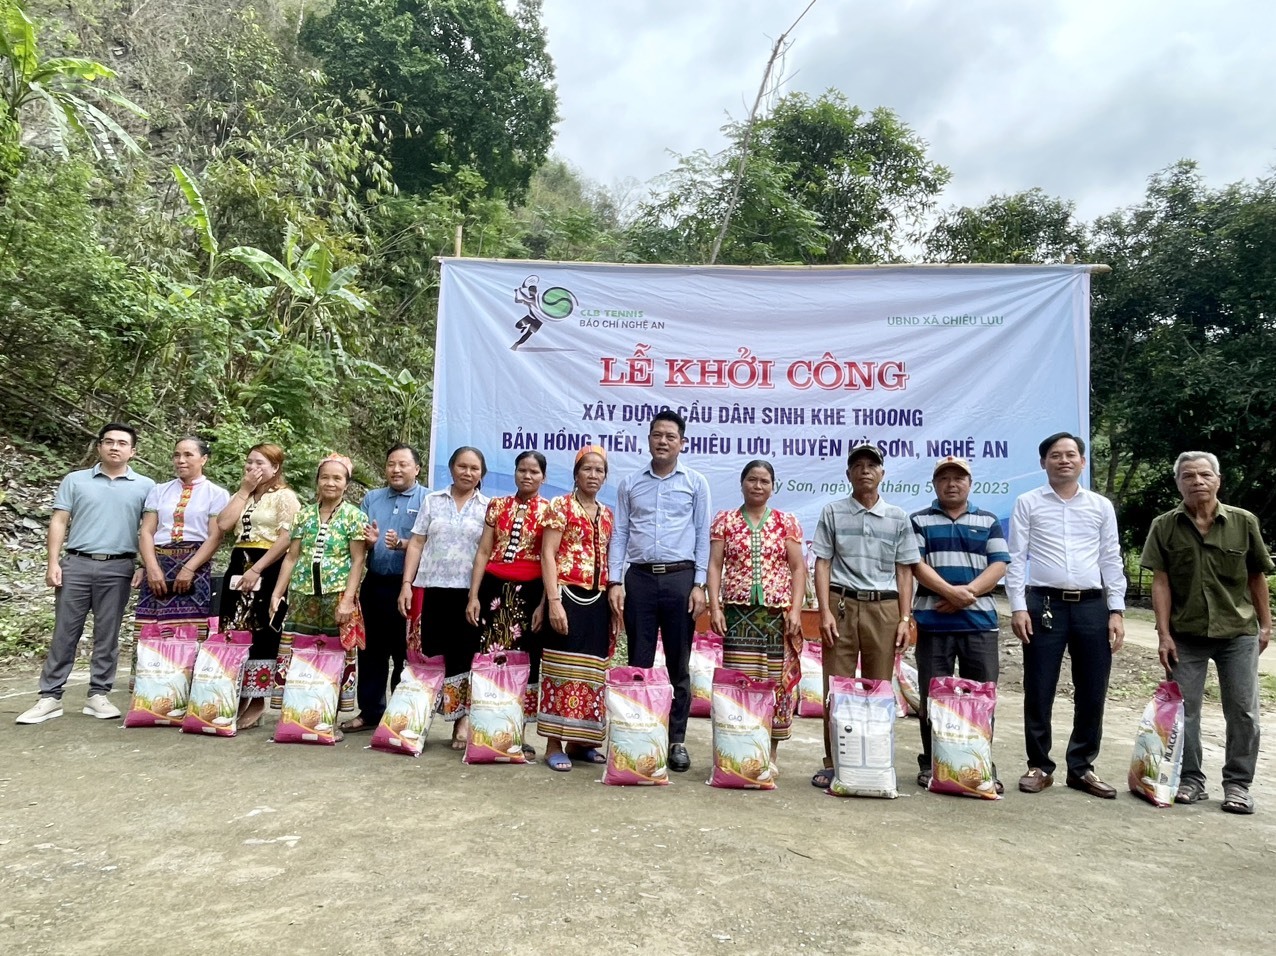 CLB Tennis báo chí Nghệ An trao tặng 500kg gạo cho người dân. Ảnh: Quang Đại